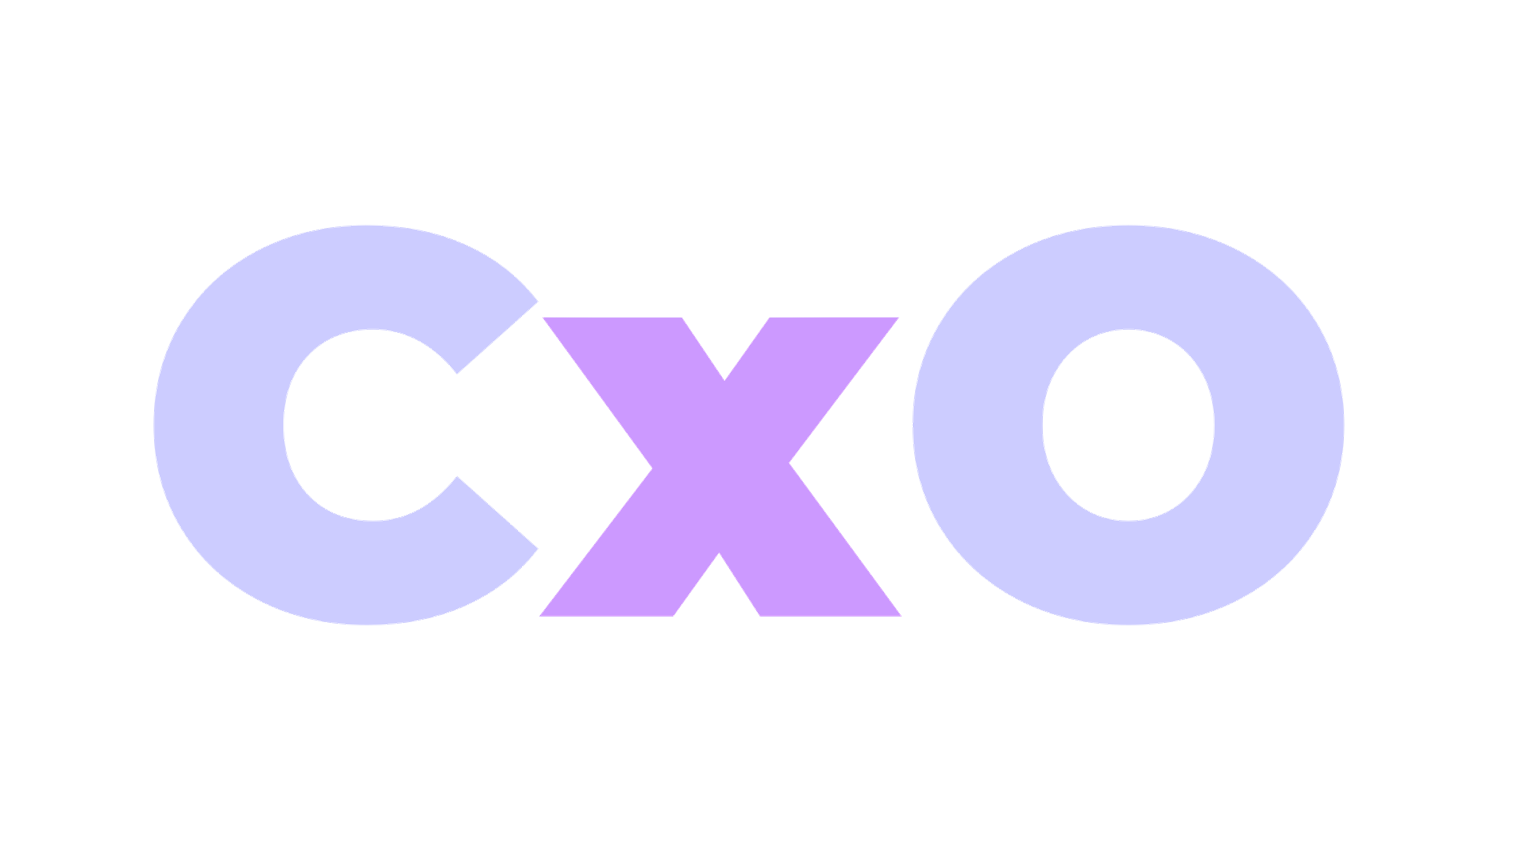 CxO logo